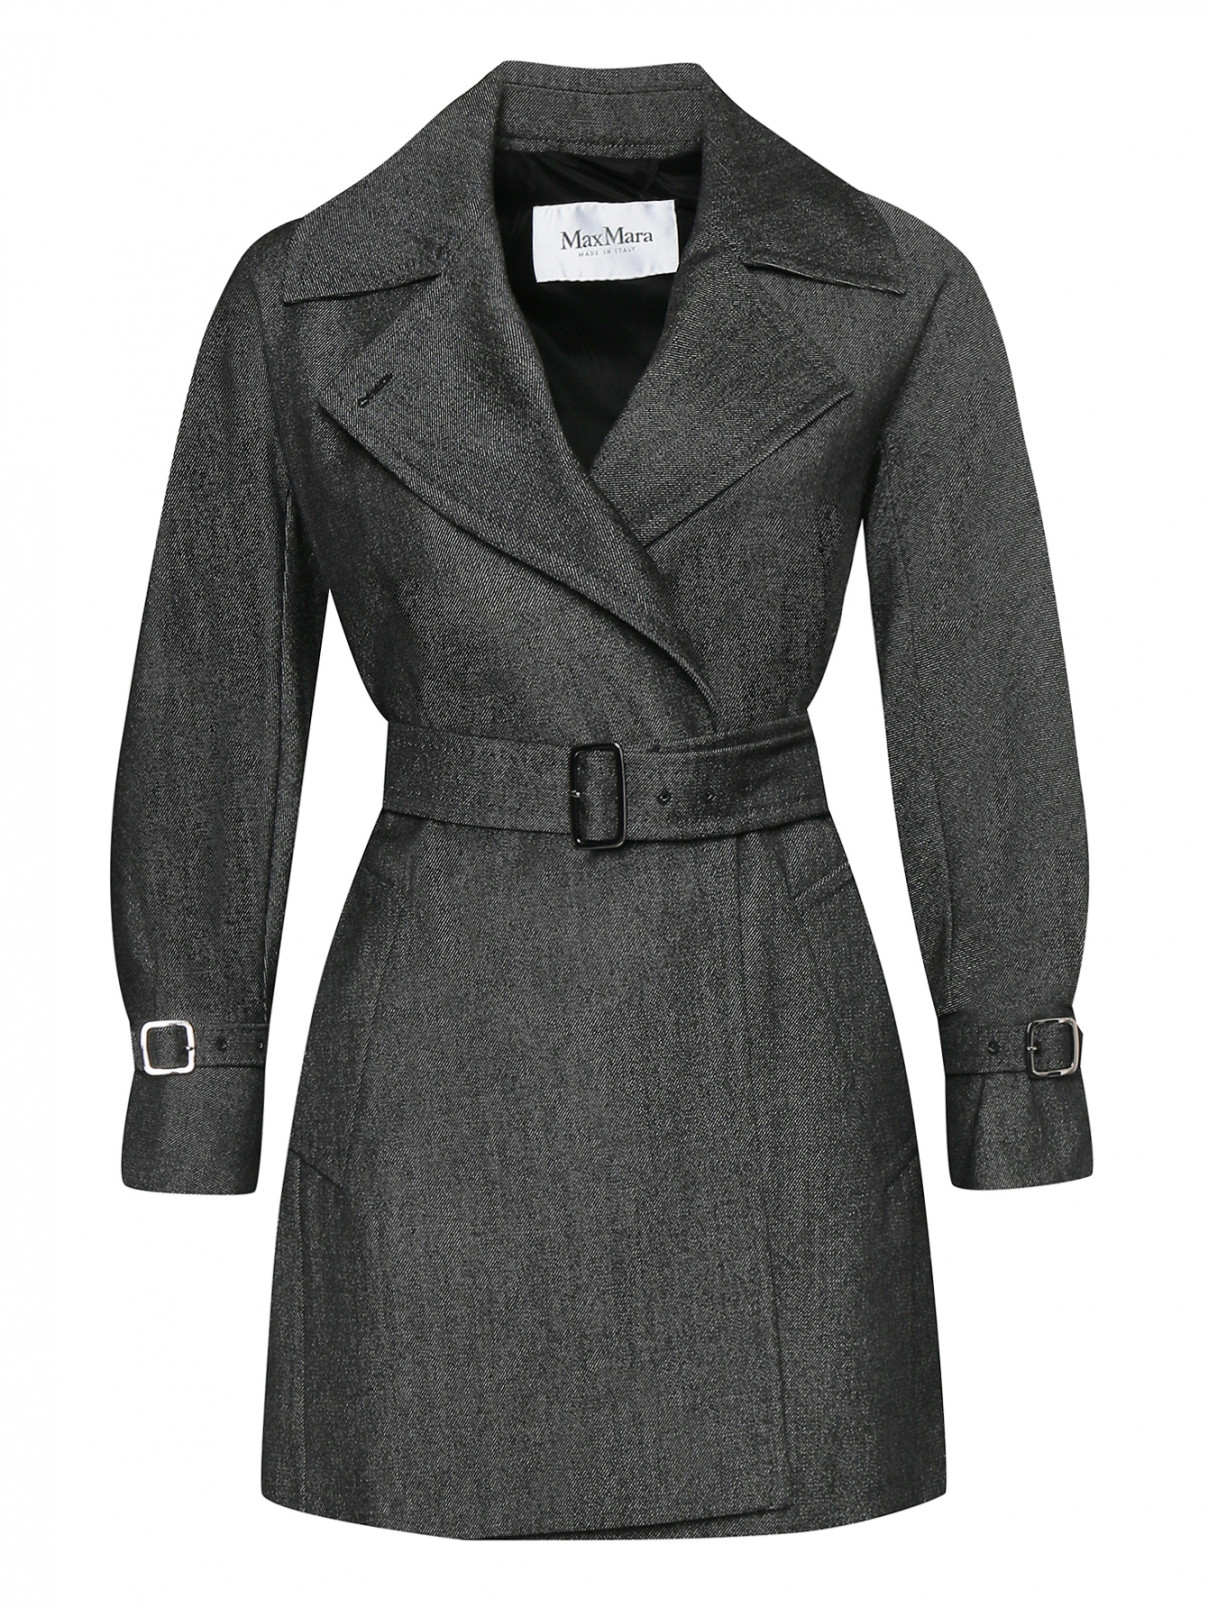 Пальто из шерсти с поясом Max Mara  –  Общий вид  – Цвет:  Серый